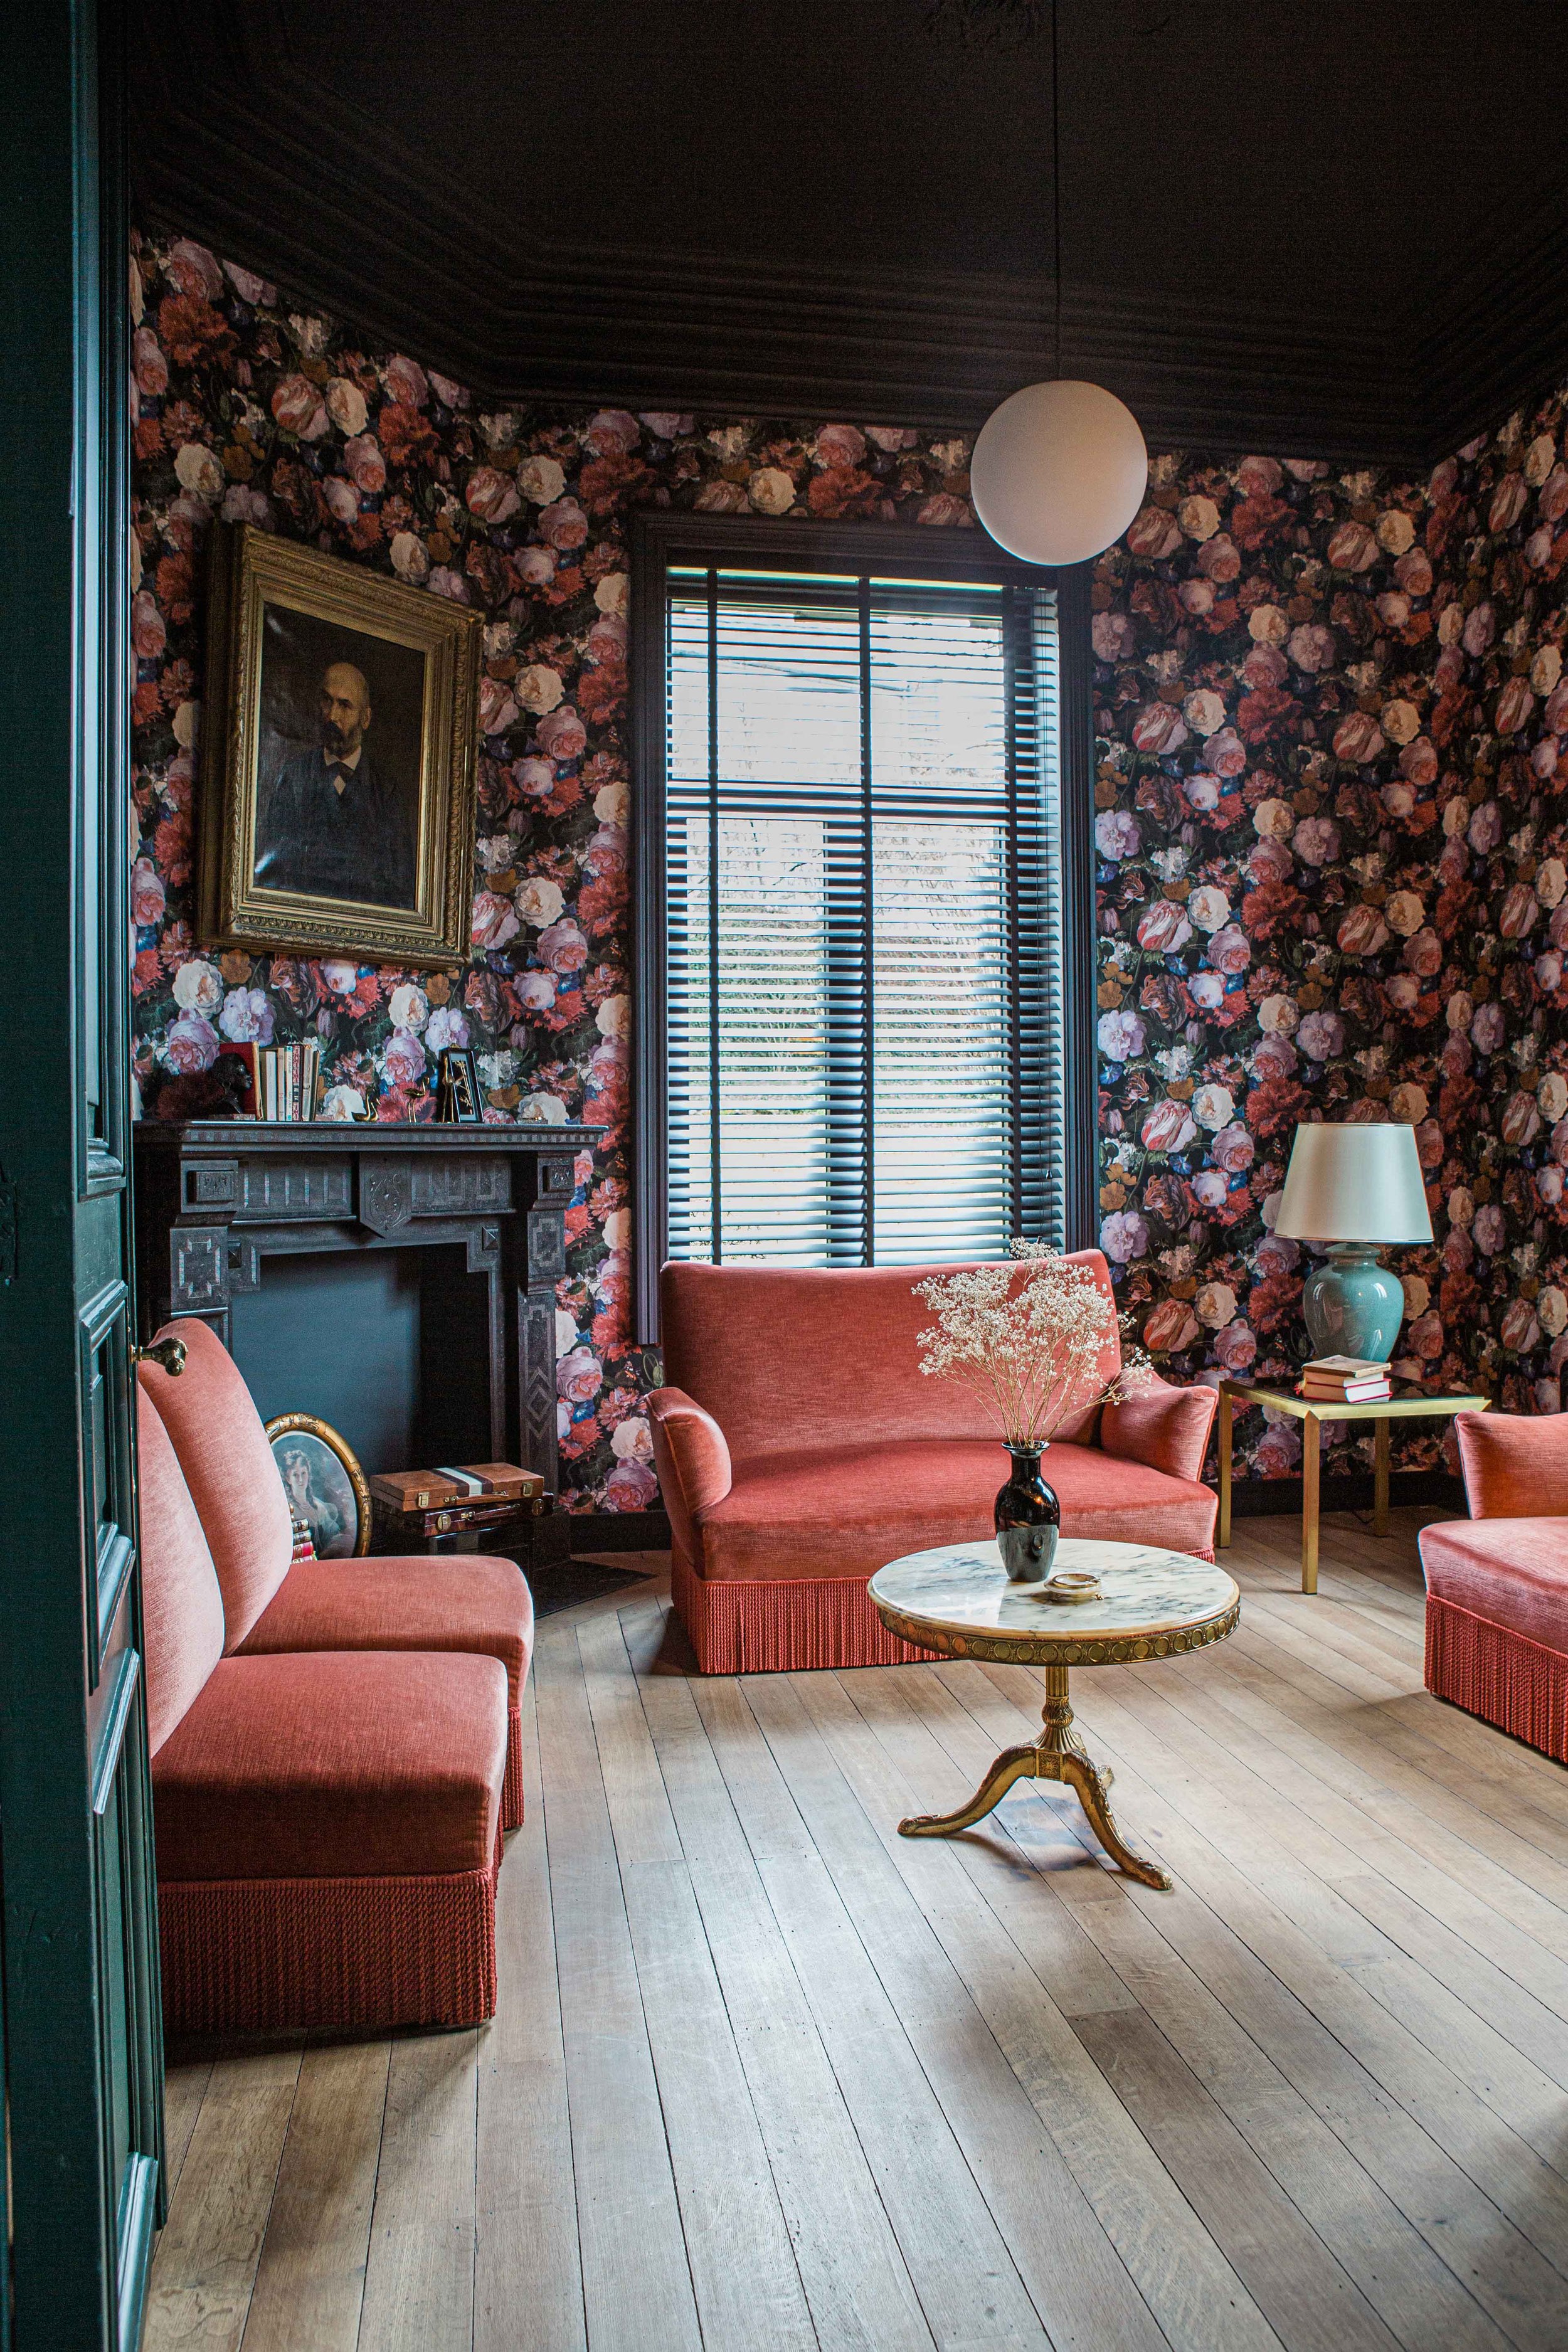  Salon cosy de style vintage et baroque dans les tons rouge et orange dans laquelle on retrouve un papier-peint fleuri et une table basse en marbre chinée  